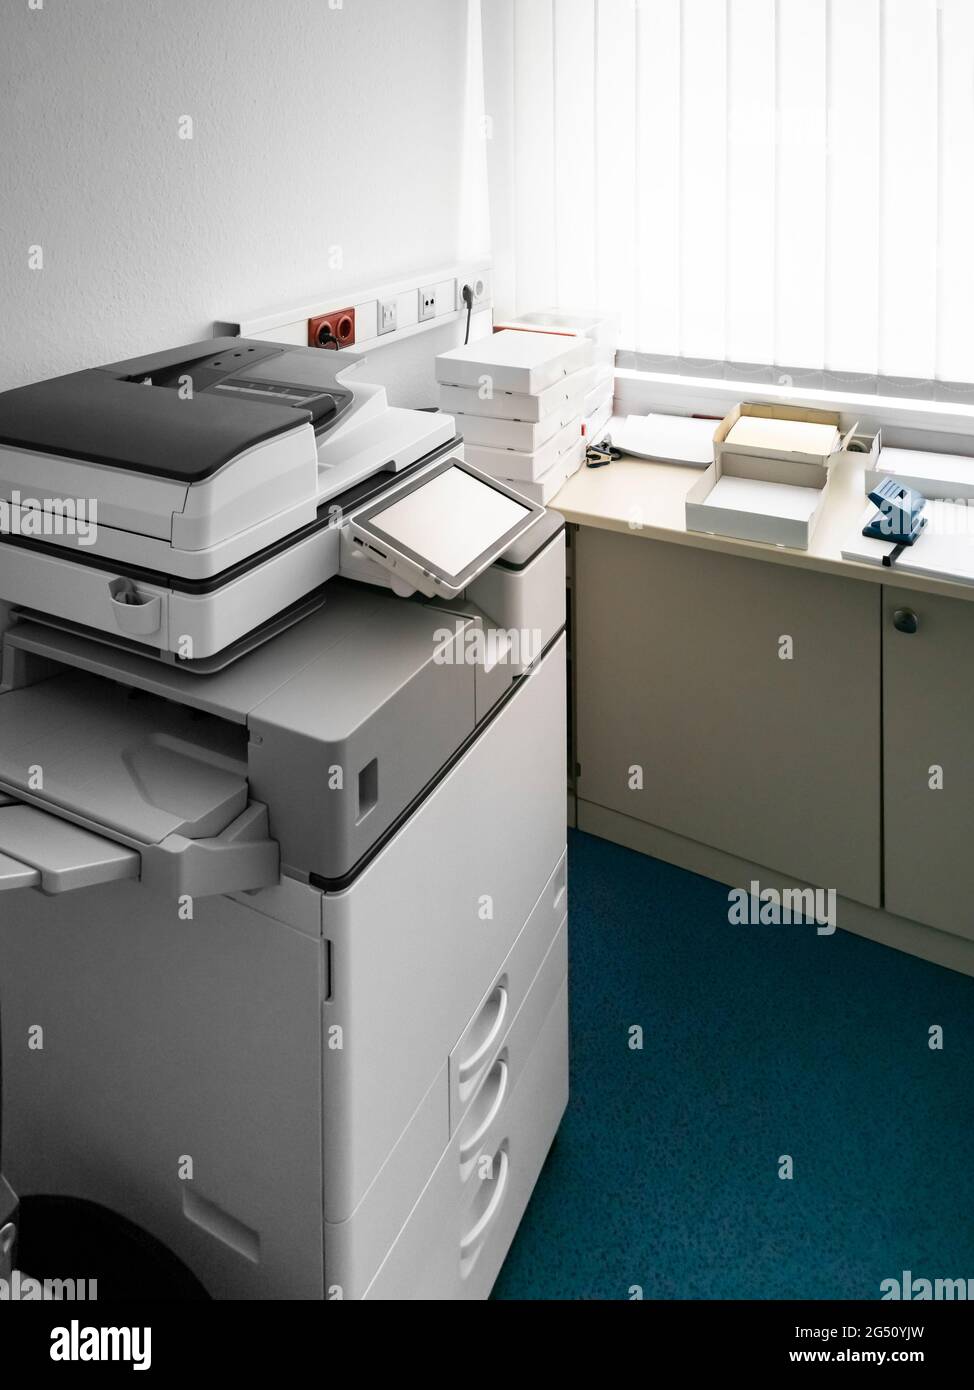 Typische Ecke in einem deutschen Büro. Ein großes Kopiergerät und viele Stapel Druckerpapier. Möbel und Teppich aus den 90er Jahren. Stockfoto